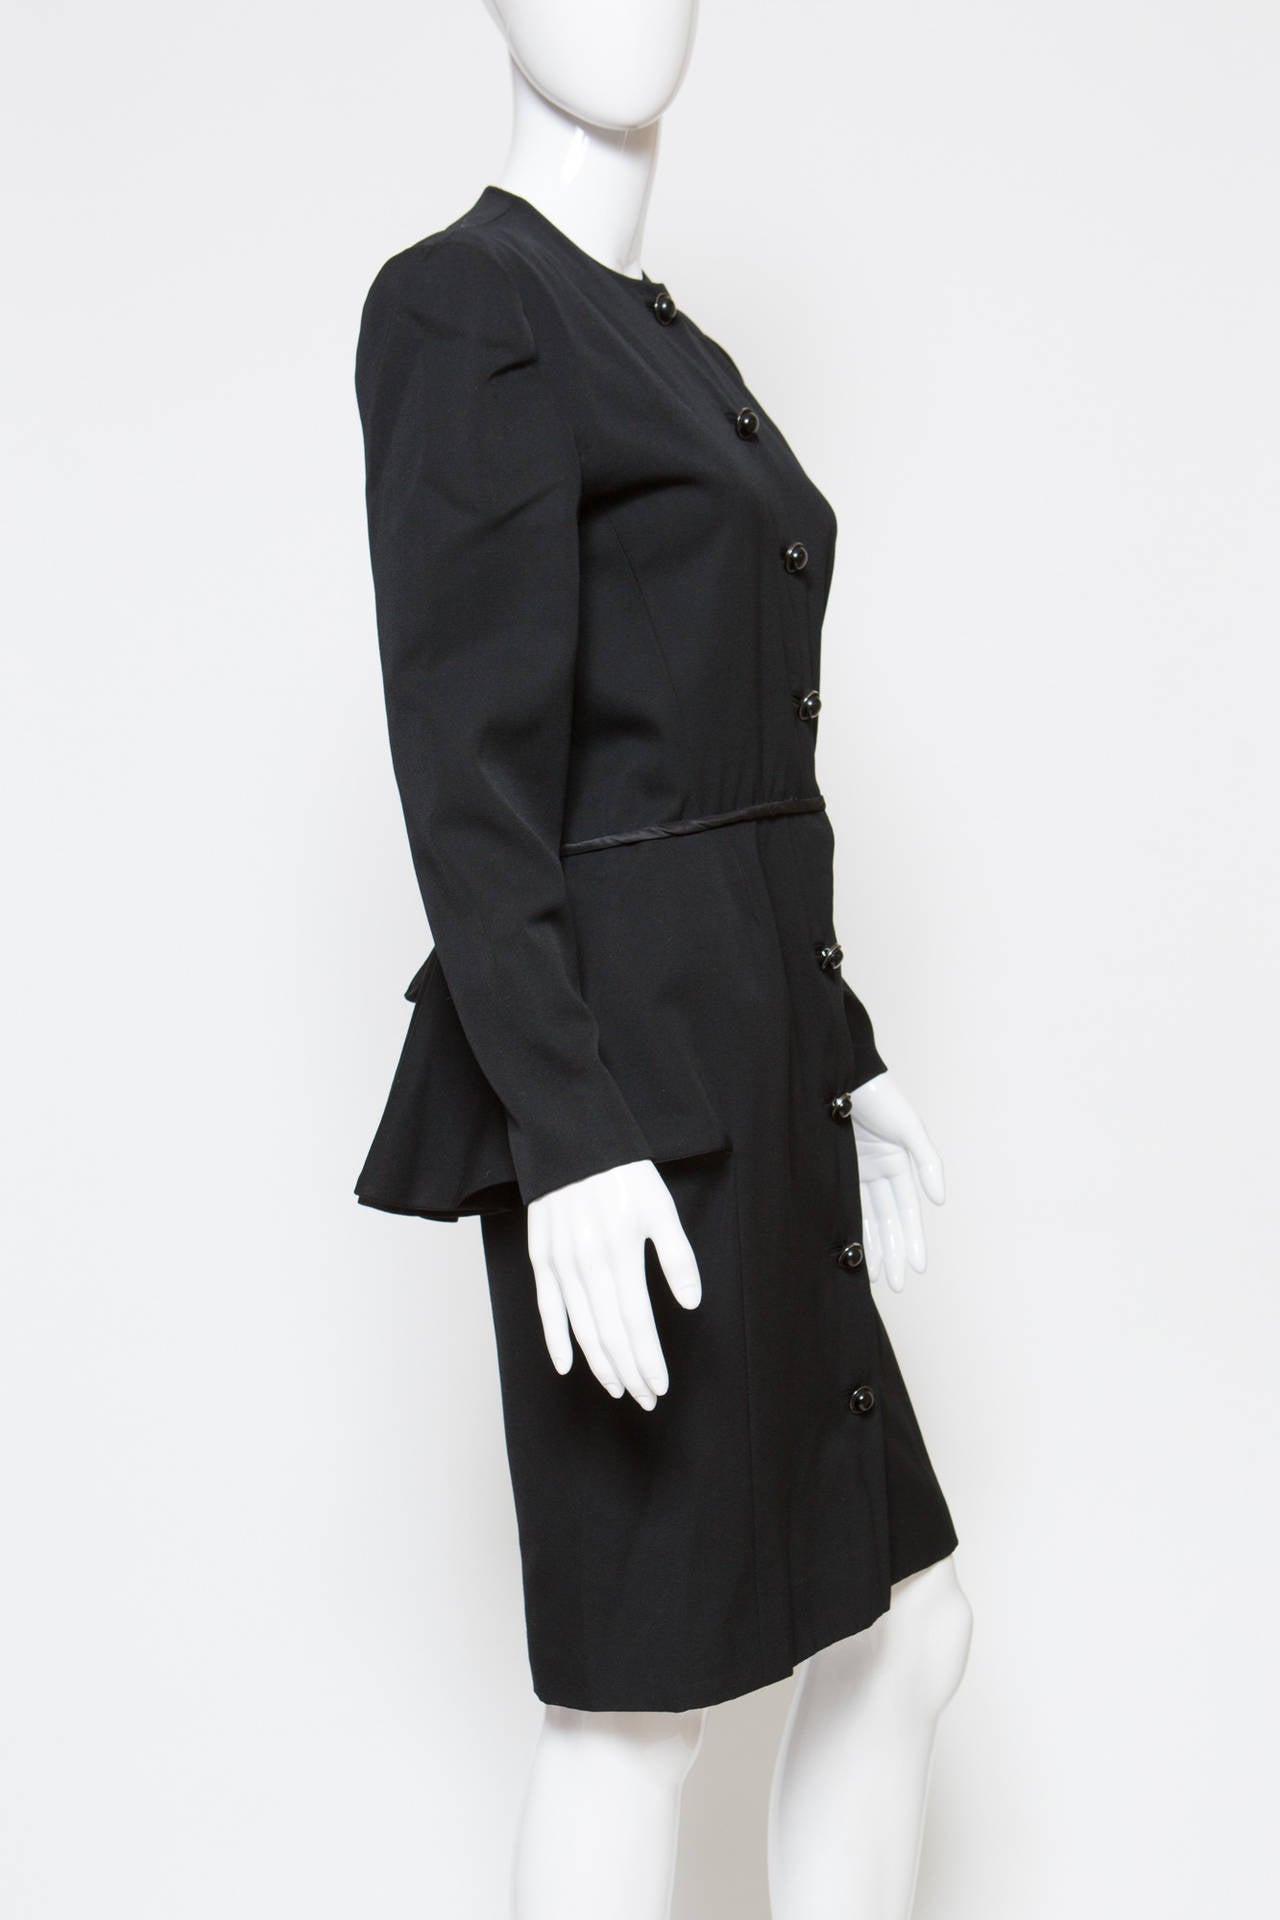 1980s Black Guy Laroche Peplum Dress For Sale at 1stdibs